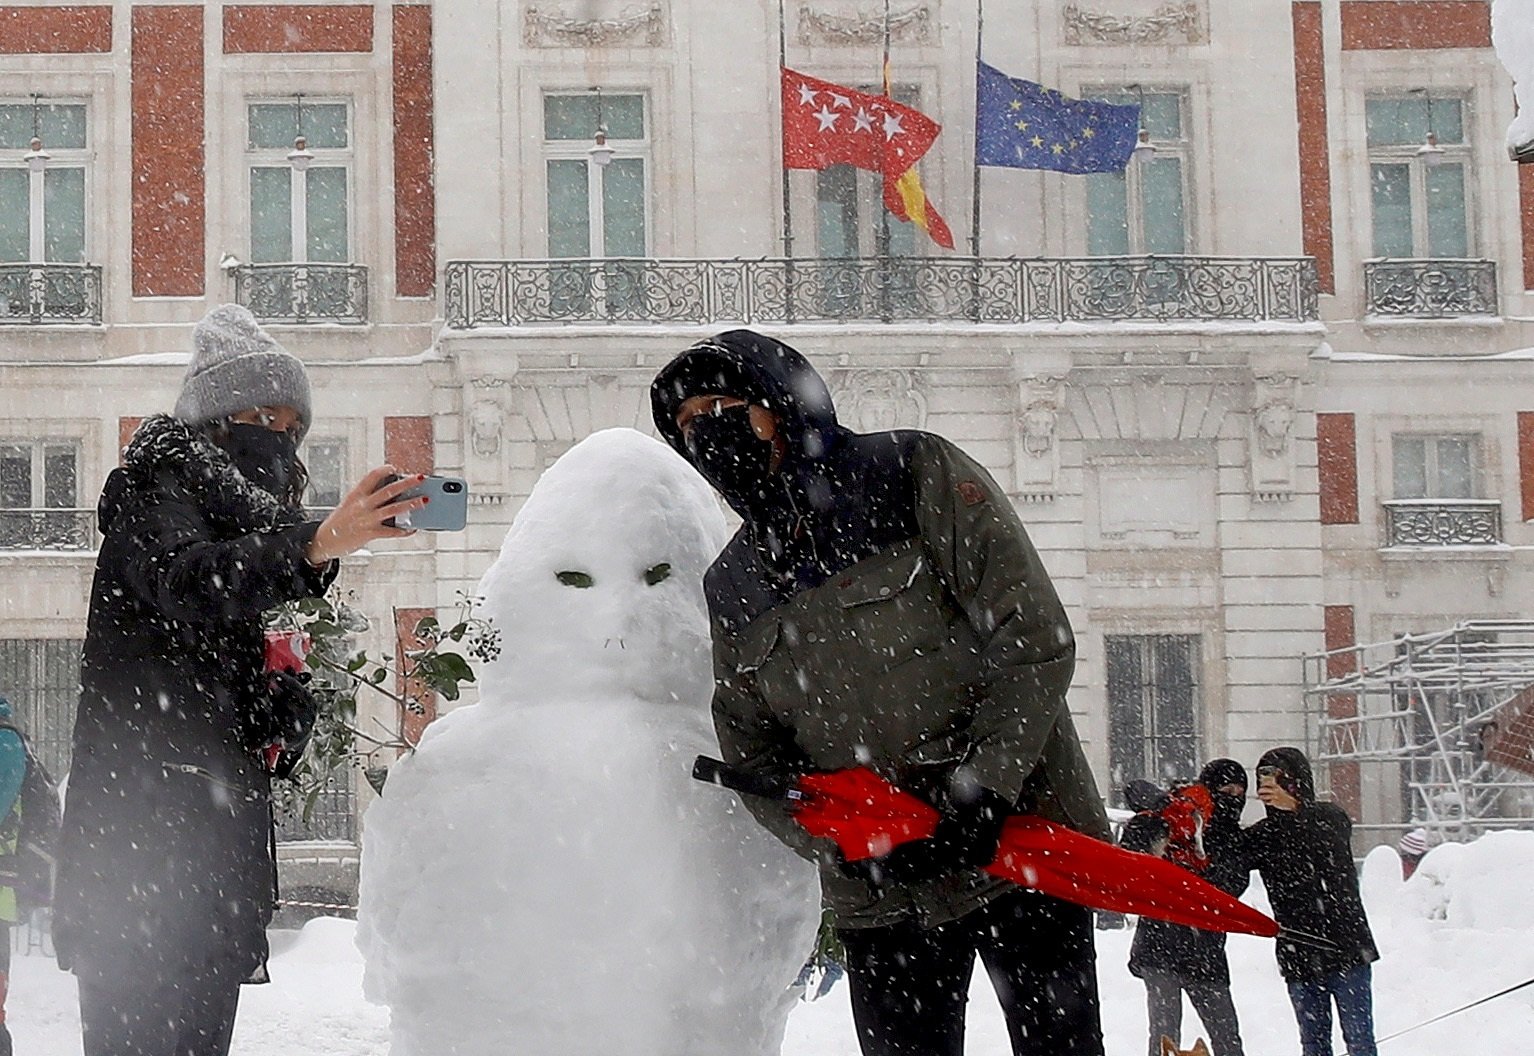 El "caos" de la nieve en España llega a Suiza